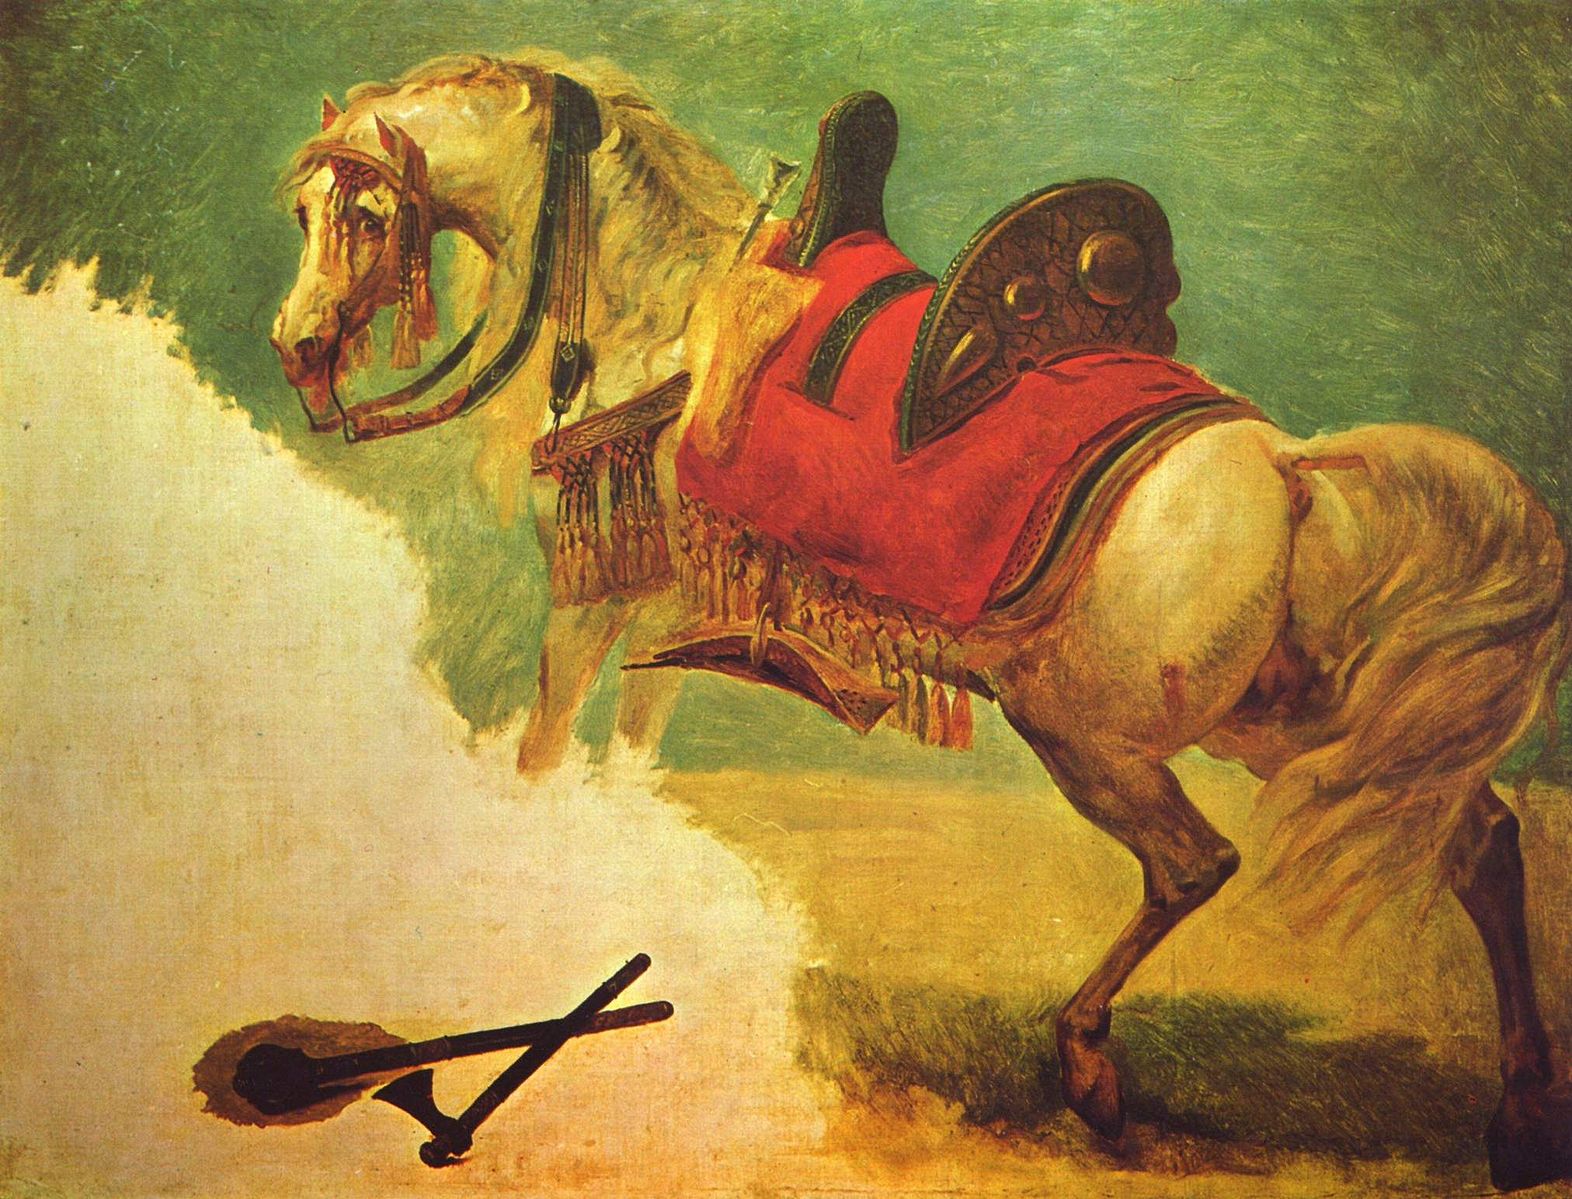 حصان مصطفى باشا - The Horse of Mustapha Pasha - مقهى جرير الثقافي